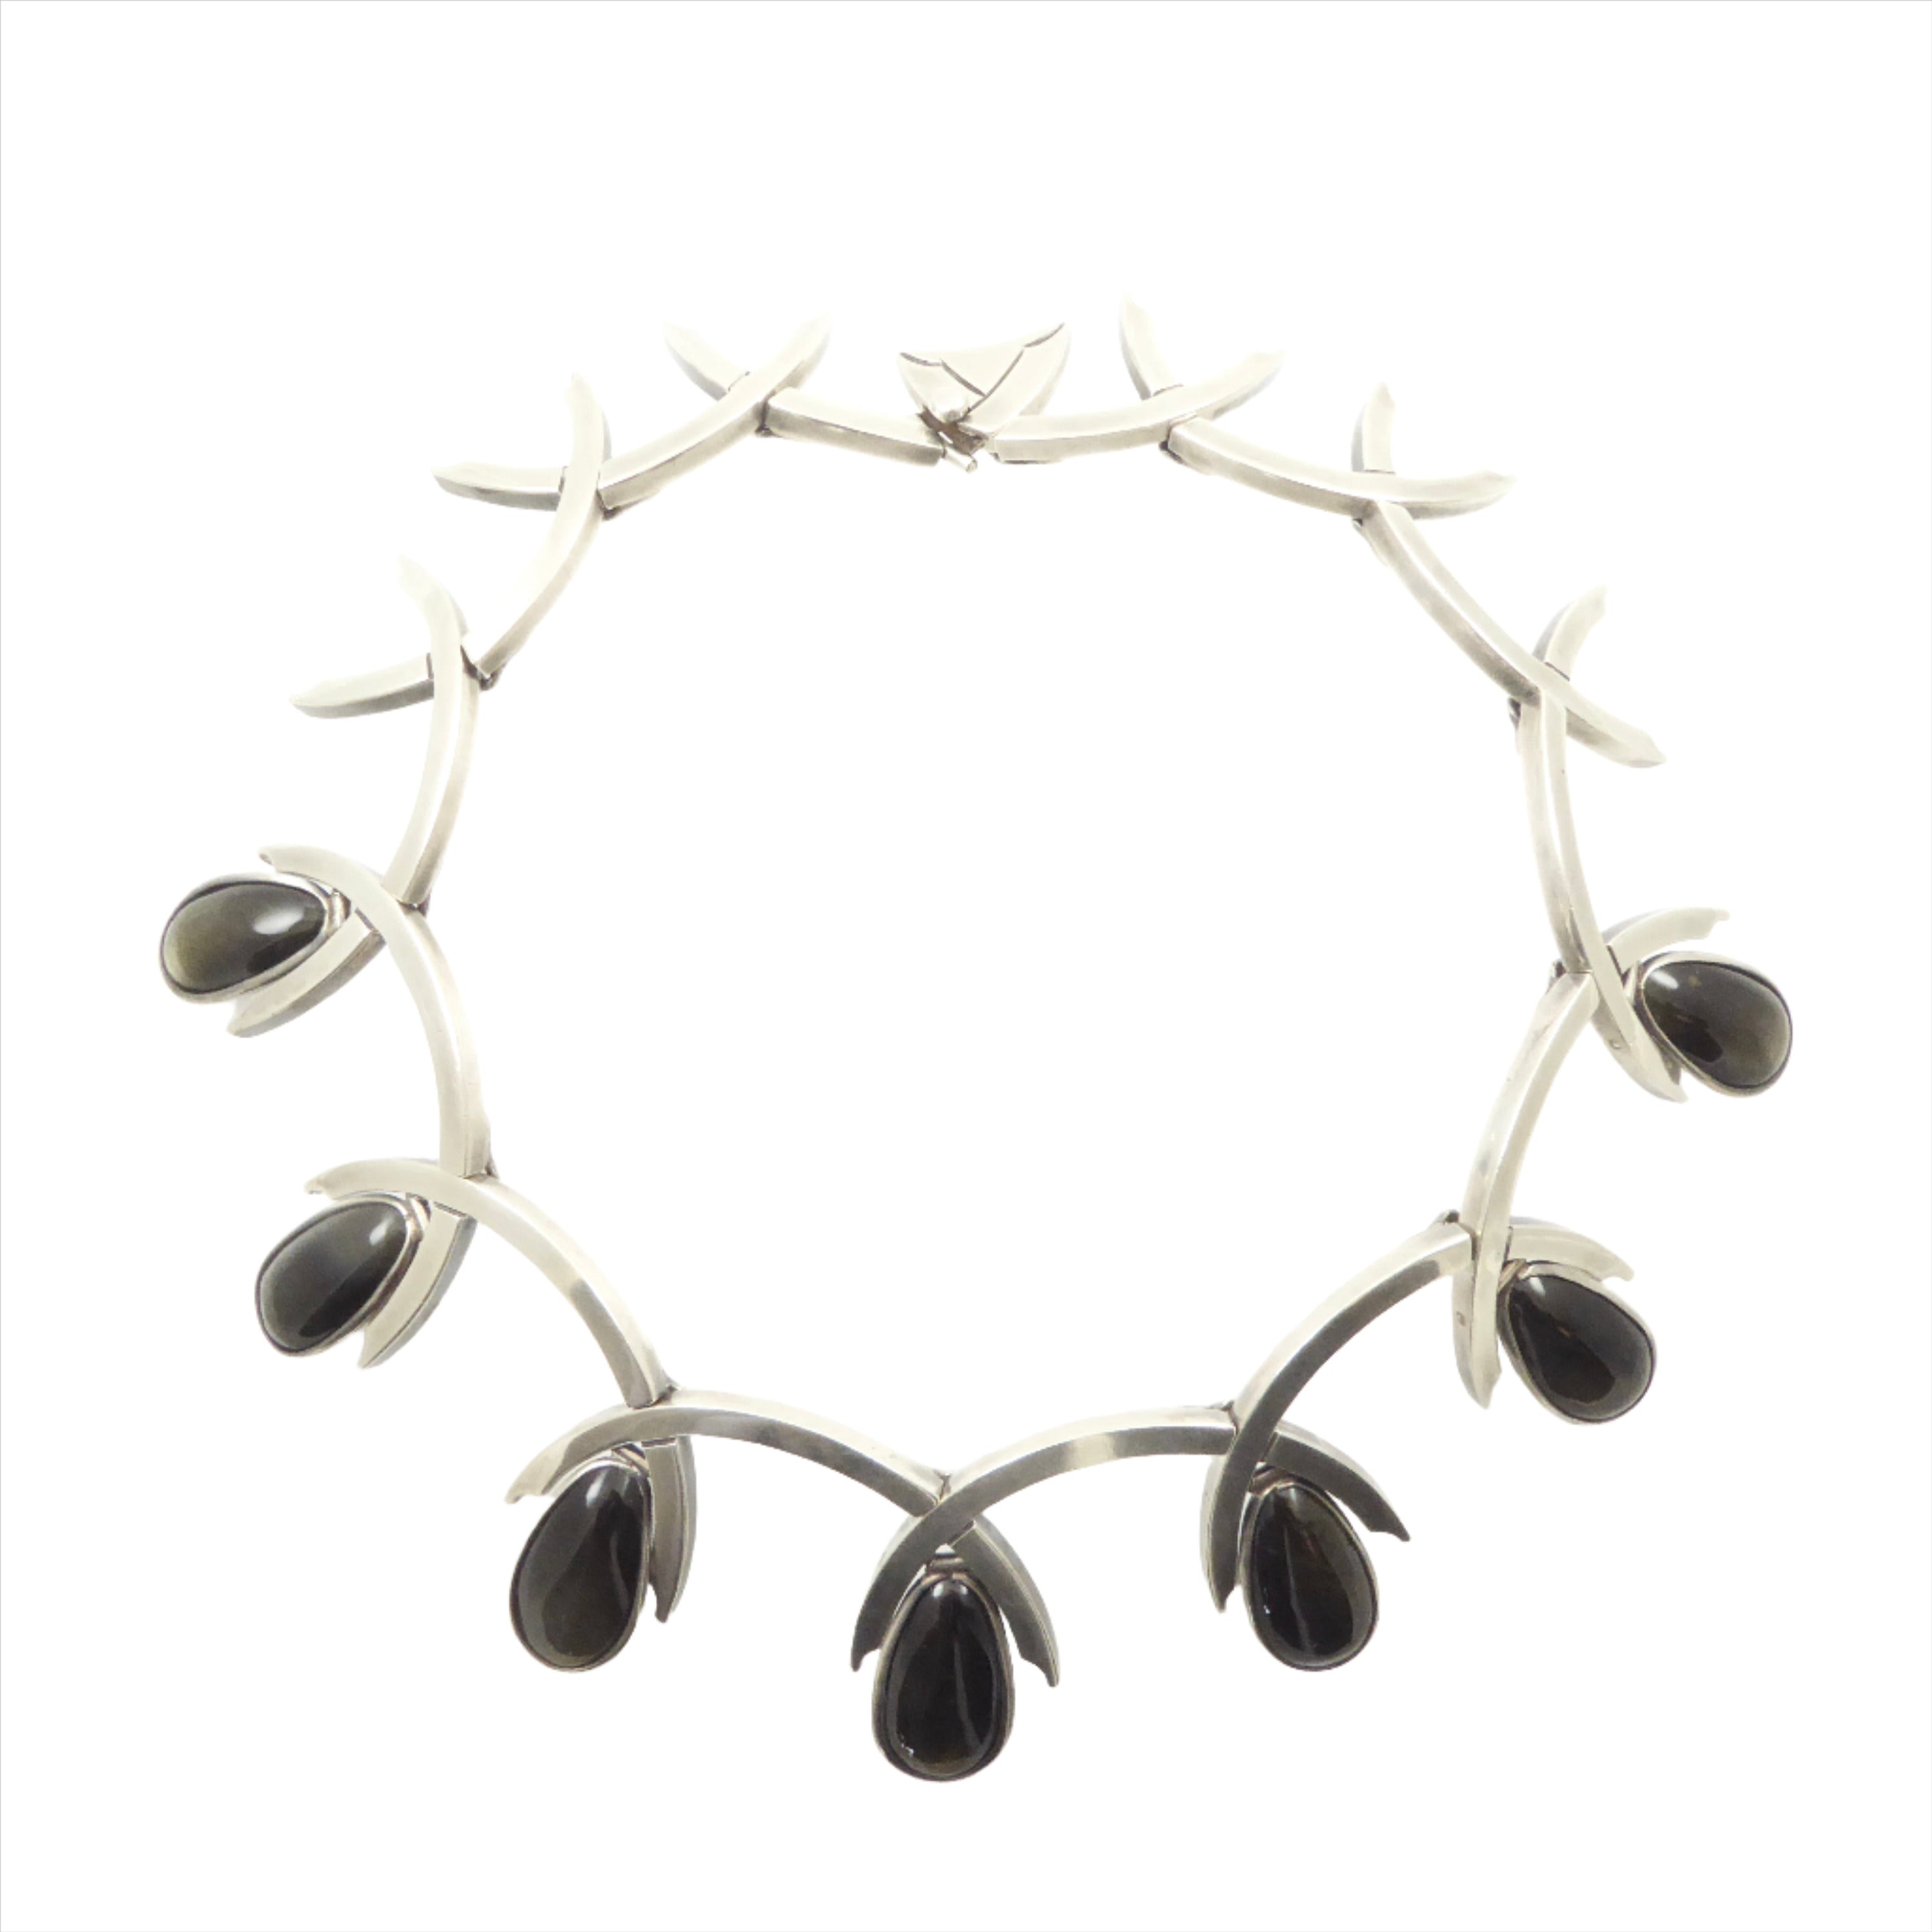 Antonio Pineda necklace obsidian